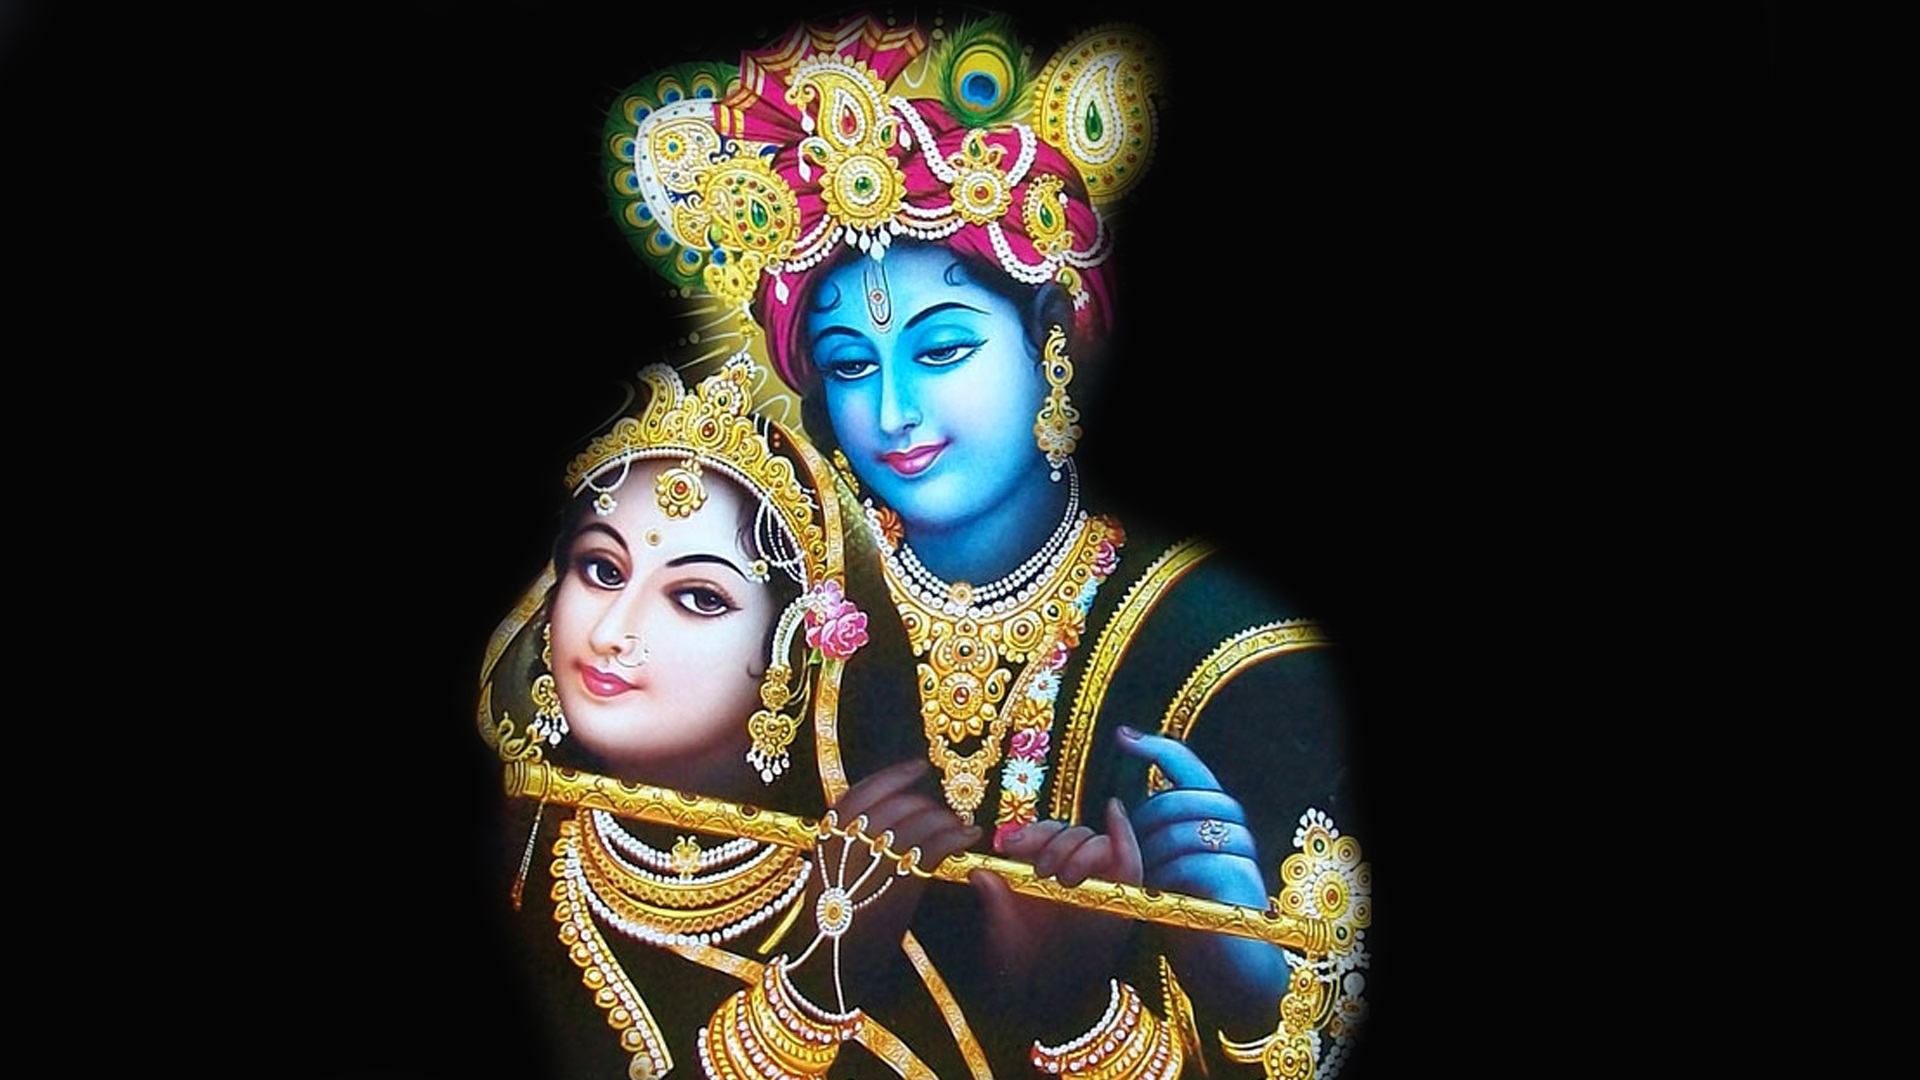 Maya Ke O Pujari Aage Ki Kuch Khabar Hai – Lyrics By Sant Swami Rajdas Ji Maharaj